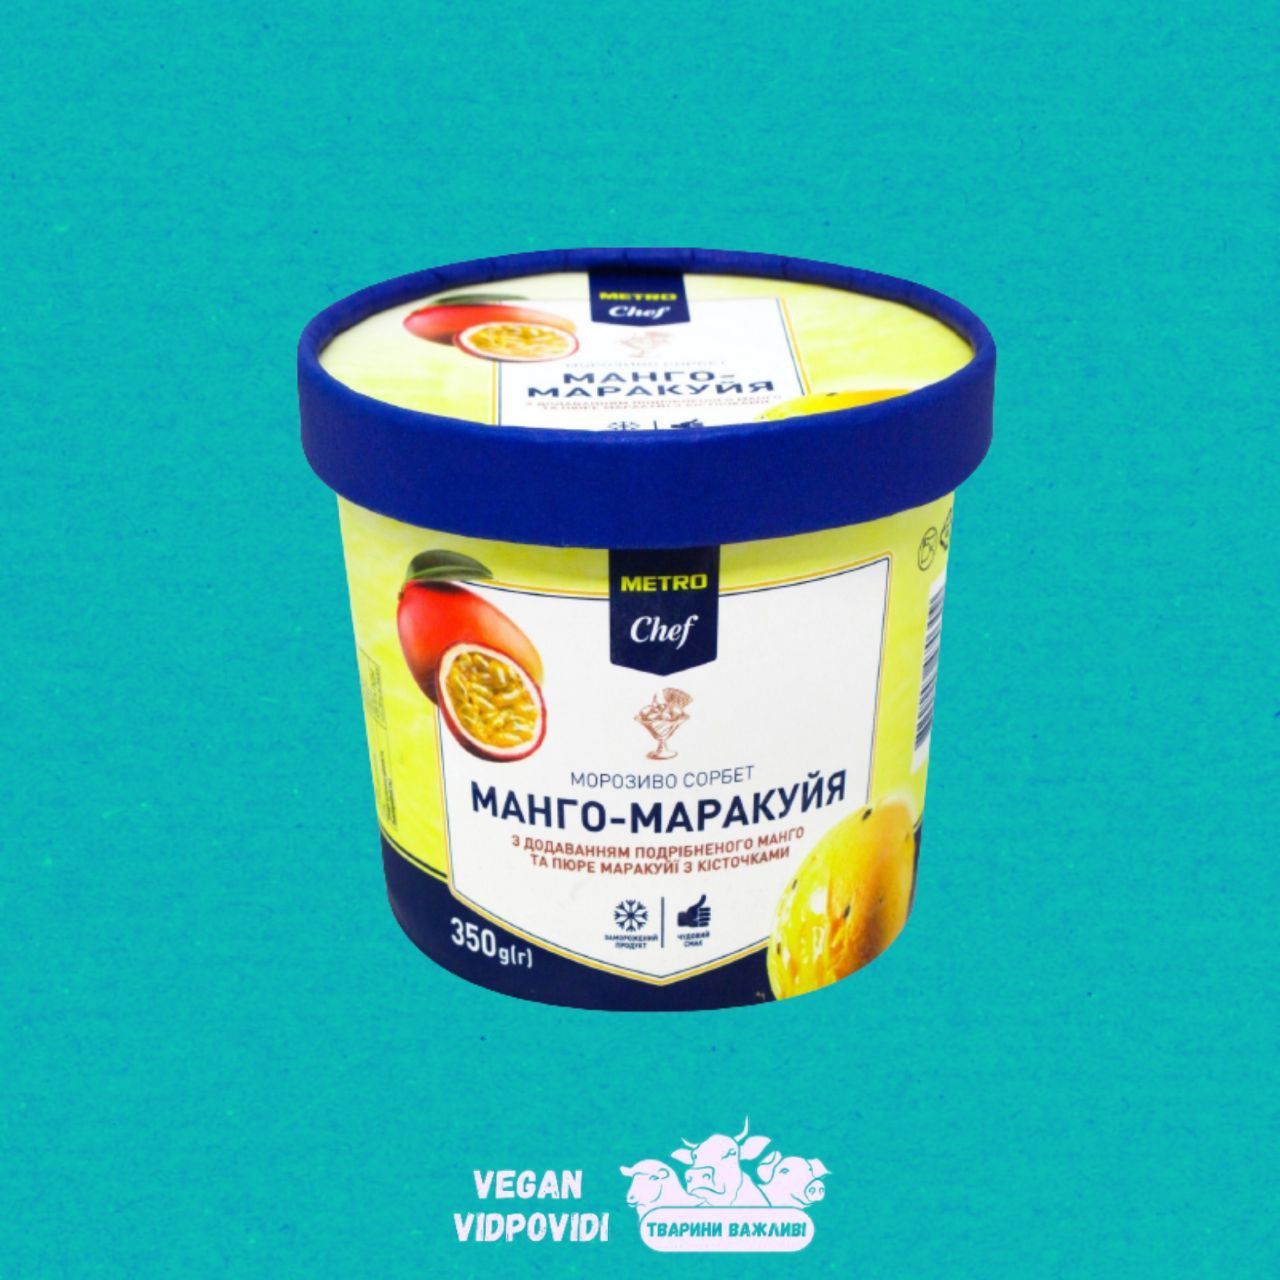 Морозиво сорбет Metro Chef манго-маракуйя